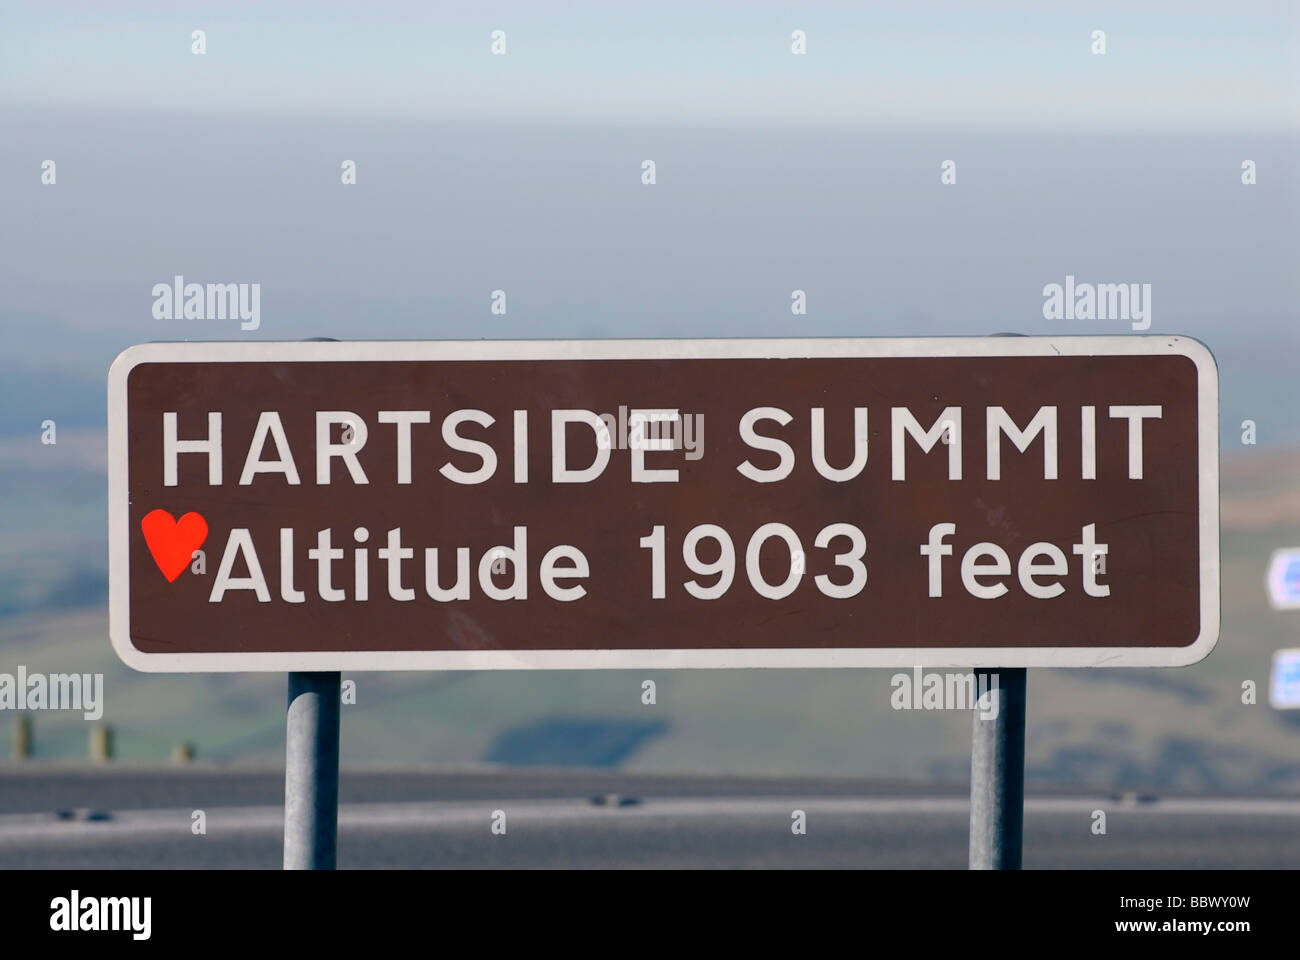 Hartside summit altitude 1903 feet Stock Photo